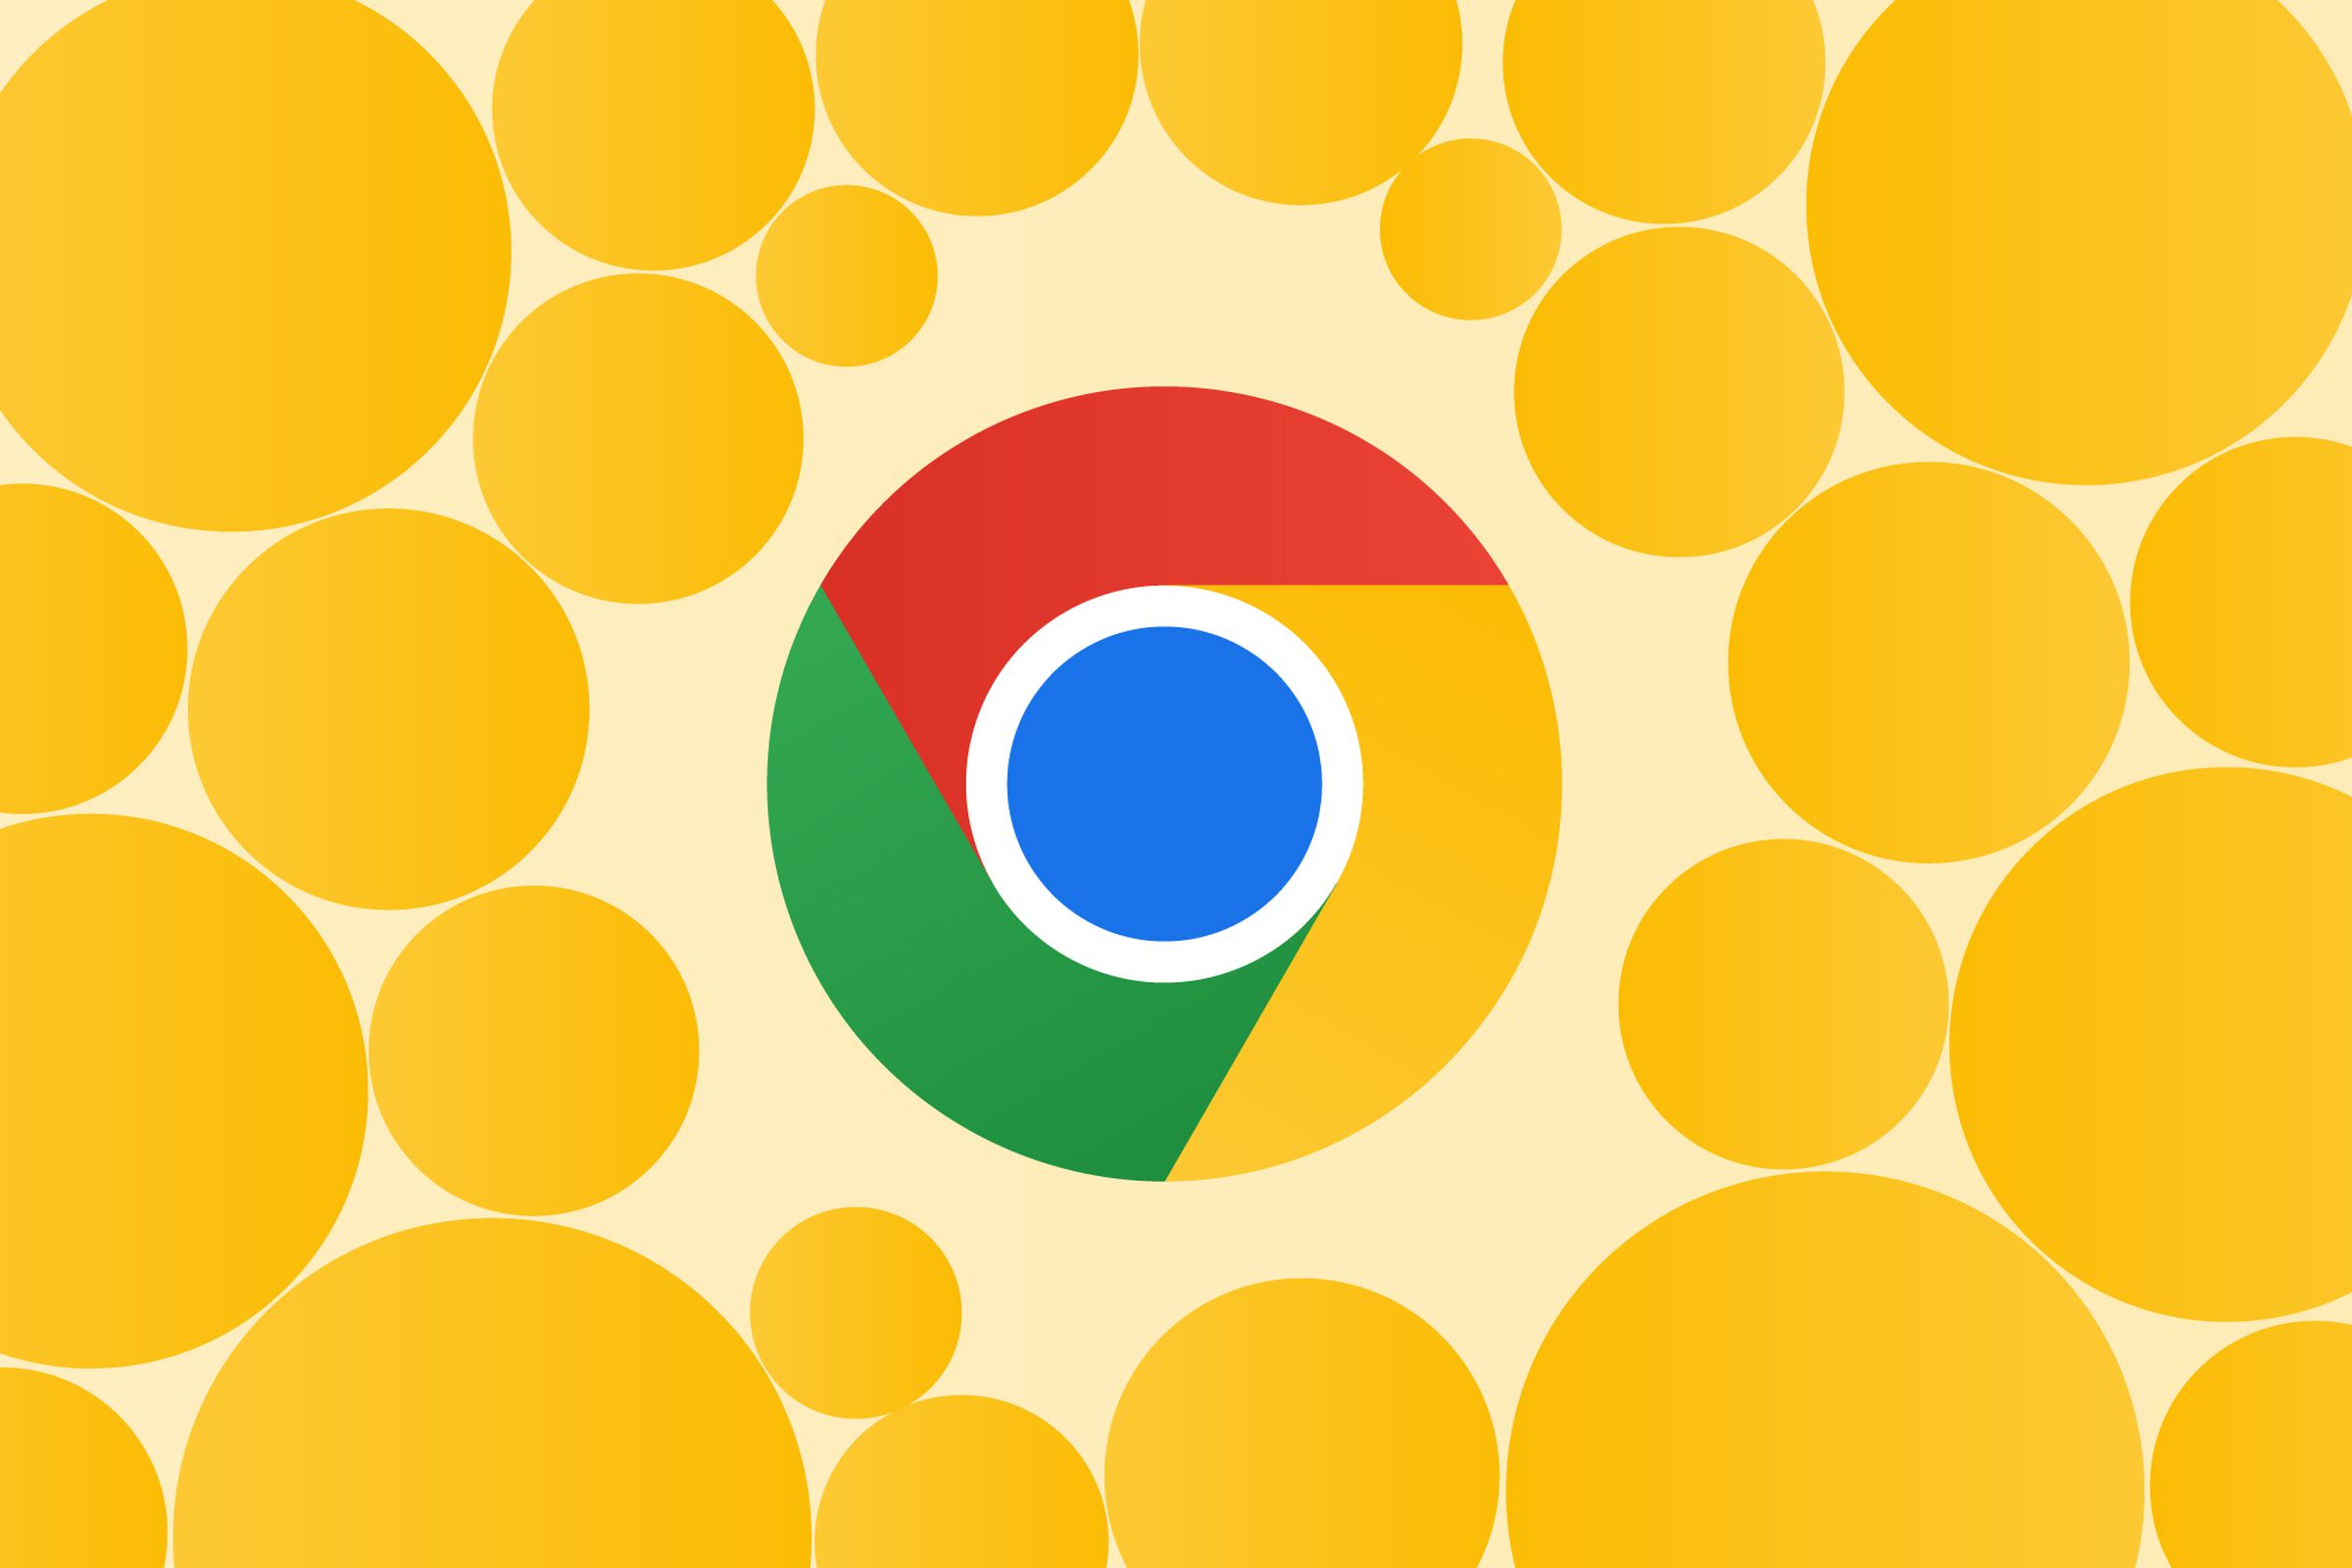 Gambar logo Chrome dikelilingi lingkaran kuning